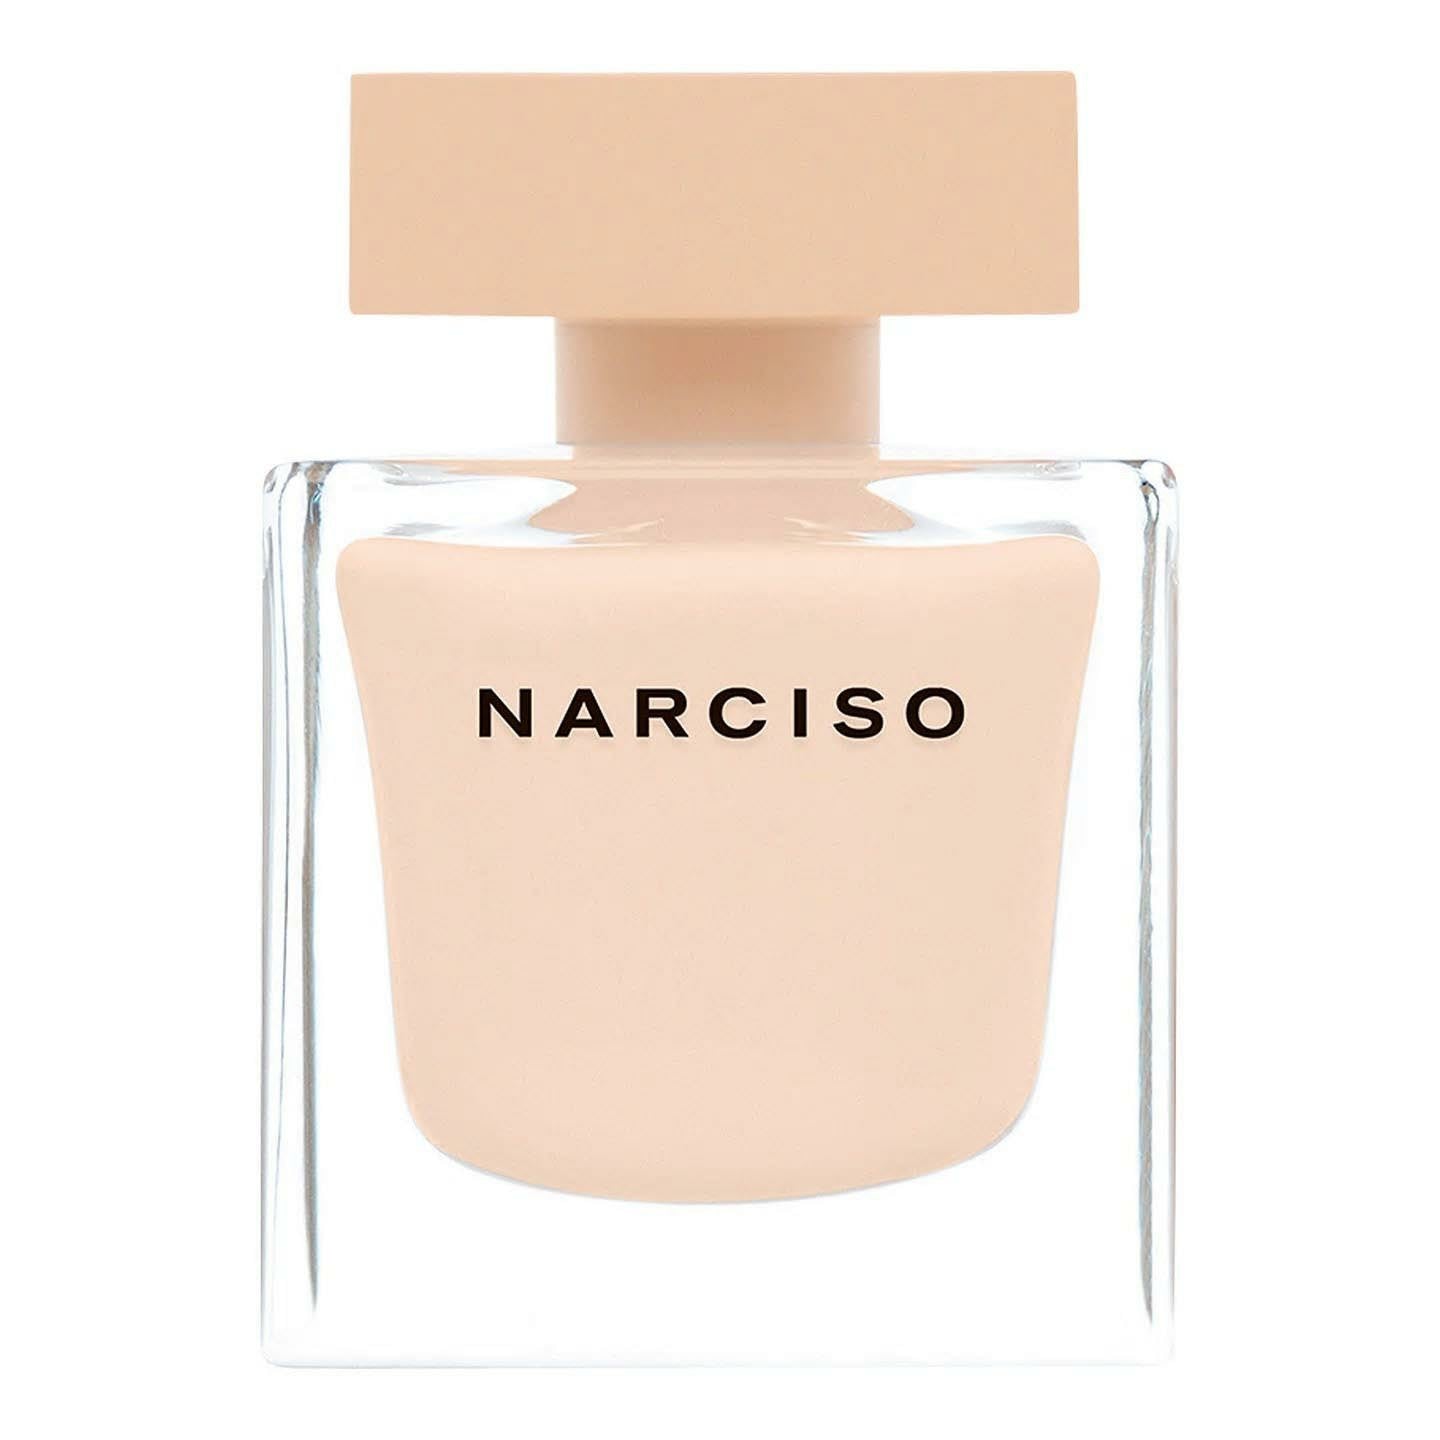 Narciso Poudre by Narciso Rodriguez for Women Eau de Parfum - 50ML